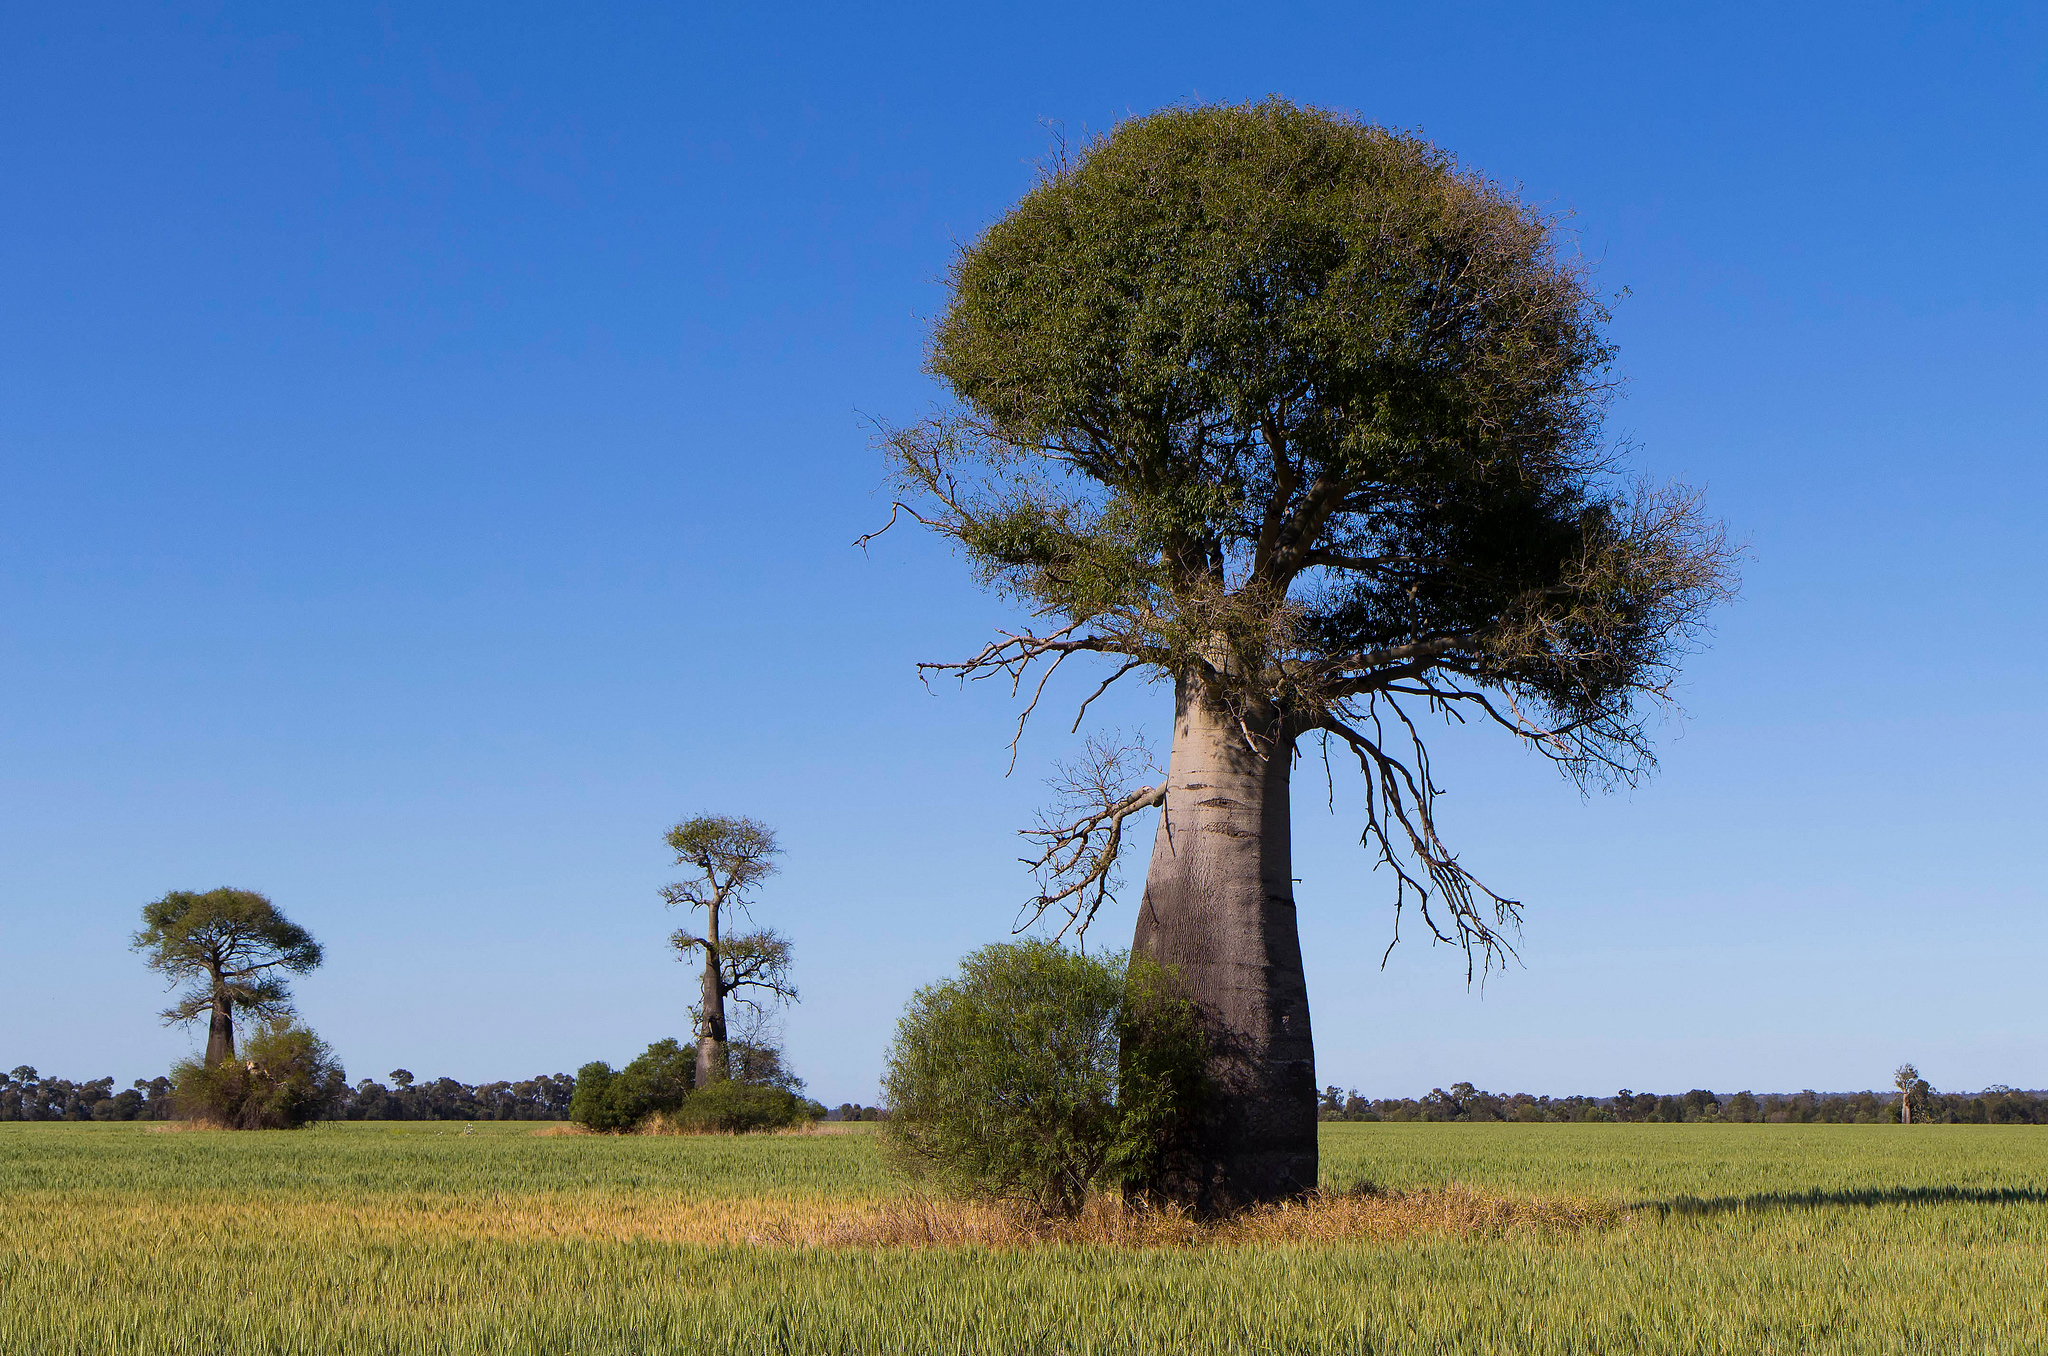 Ба баб. Баобаб (Адансония пальчатая. Баобаб в саванне Африки. Баобаб бутылочное дерево. Бутылочное дерево в саванне.